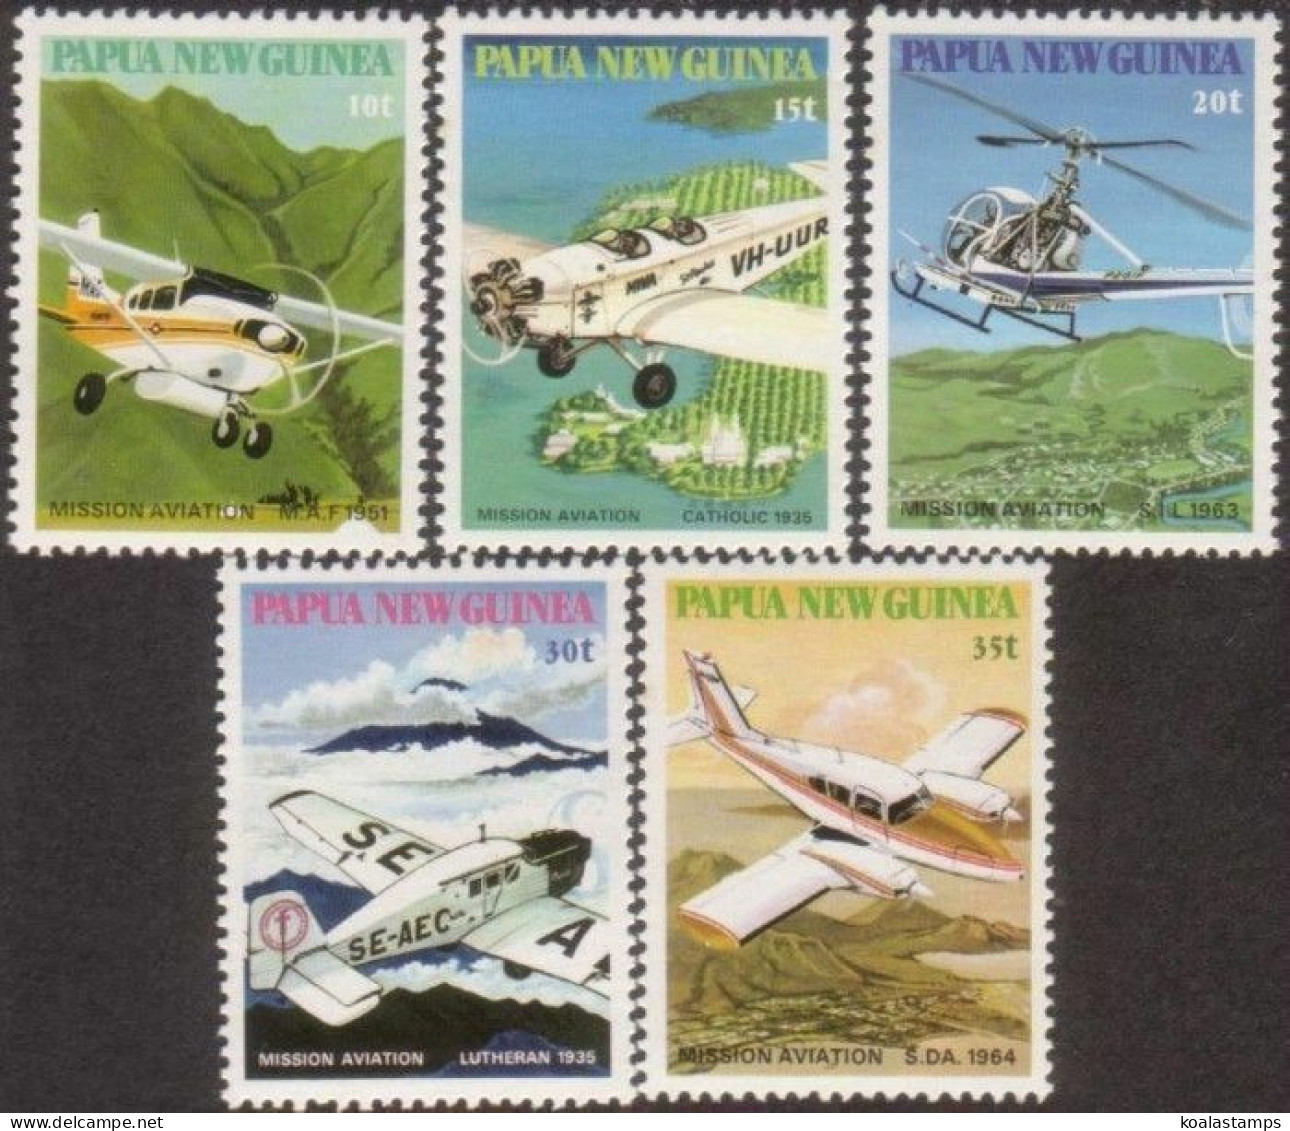 Papua New Guinea 1981 SG412-416 Mission Avation Set MNH - Papua-Neuguinea